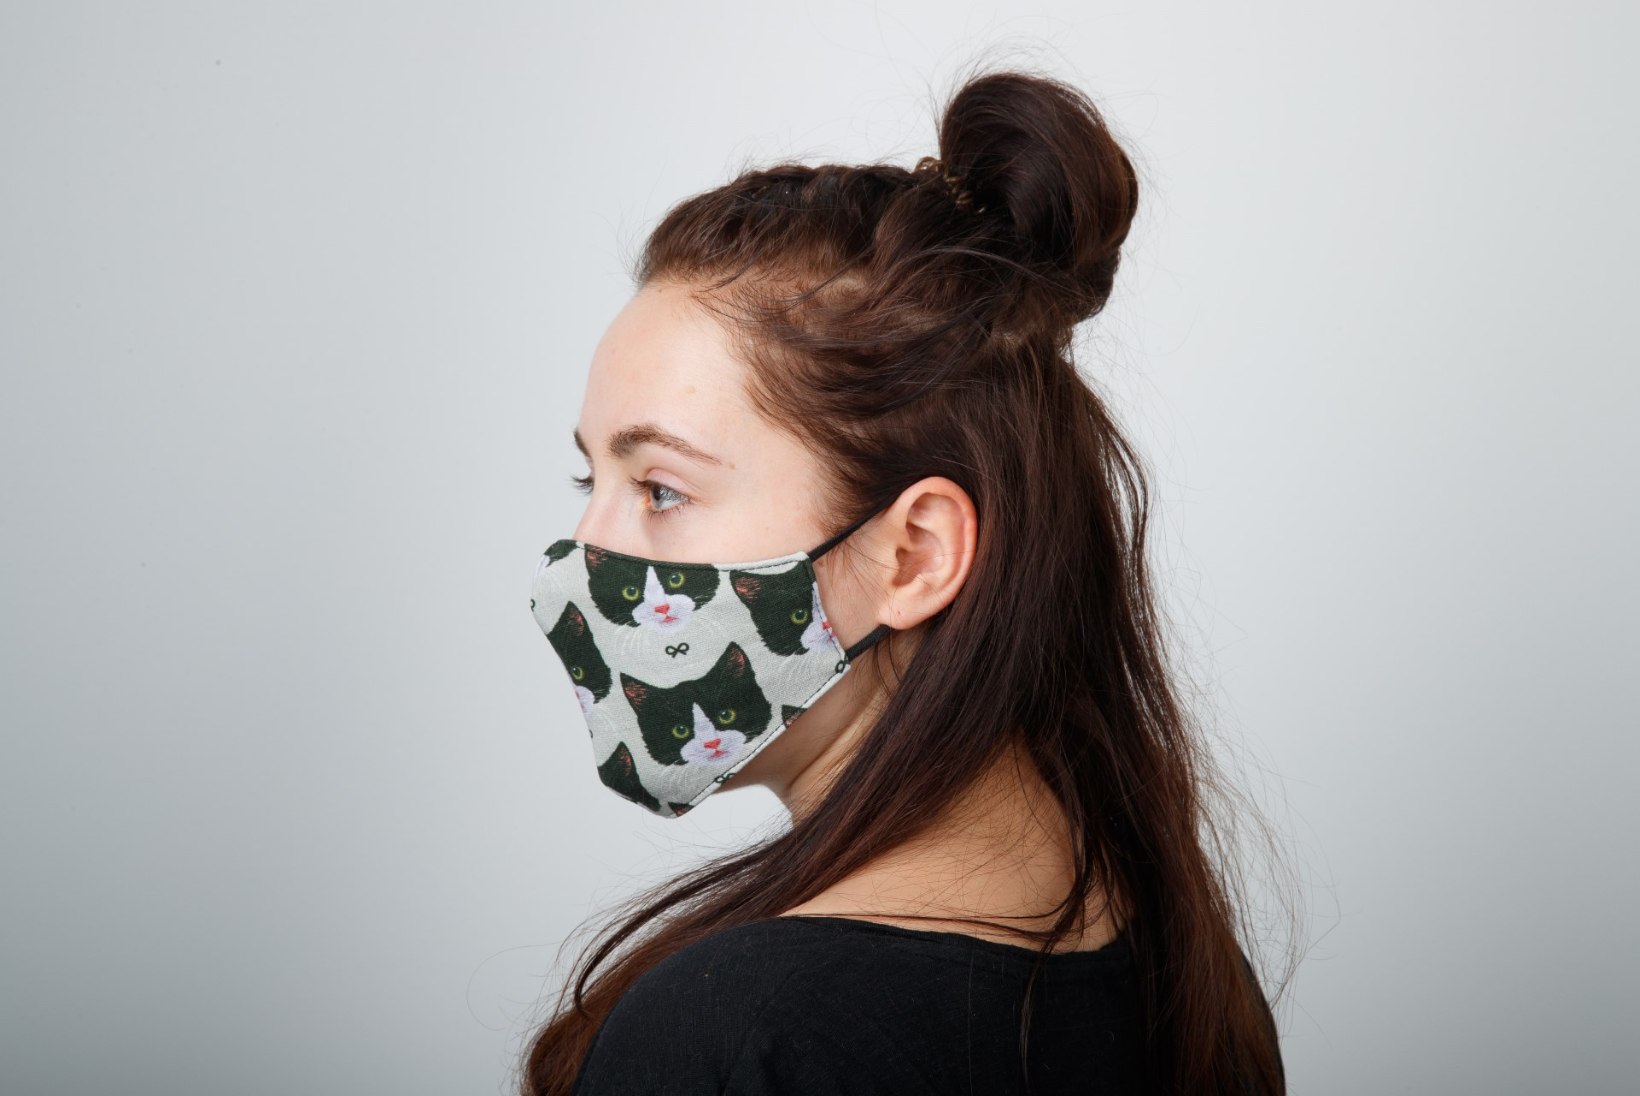 Soovitus kohustusest etem: suurem osa õpilasi kannab koolimajas maski ilma sunnita